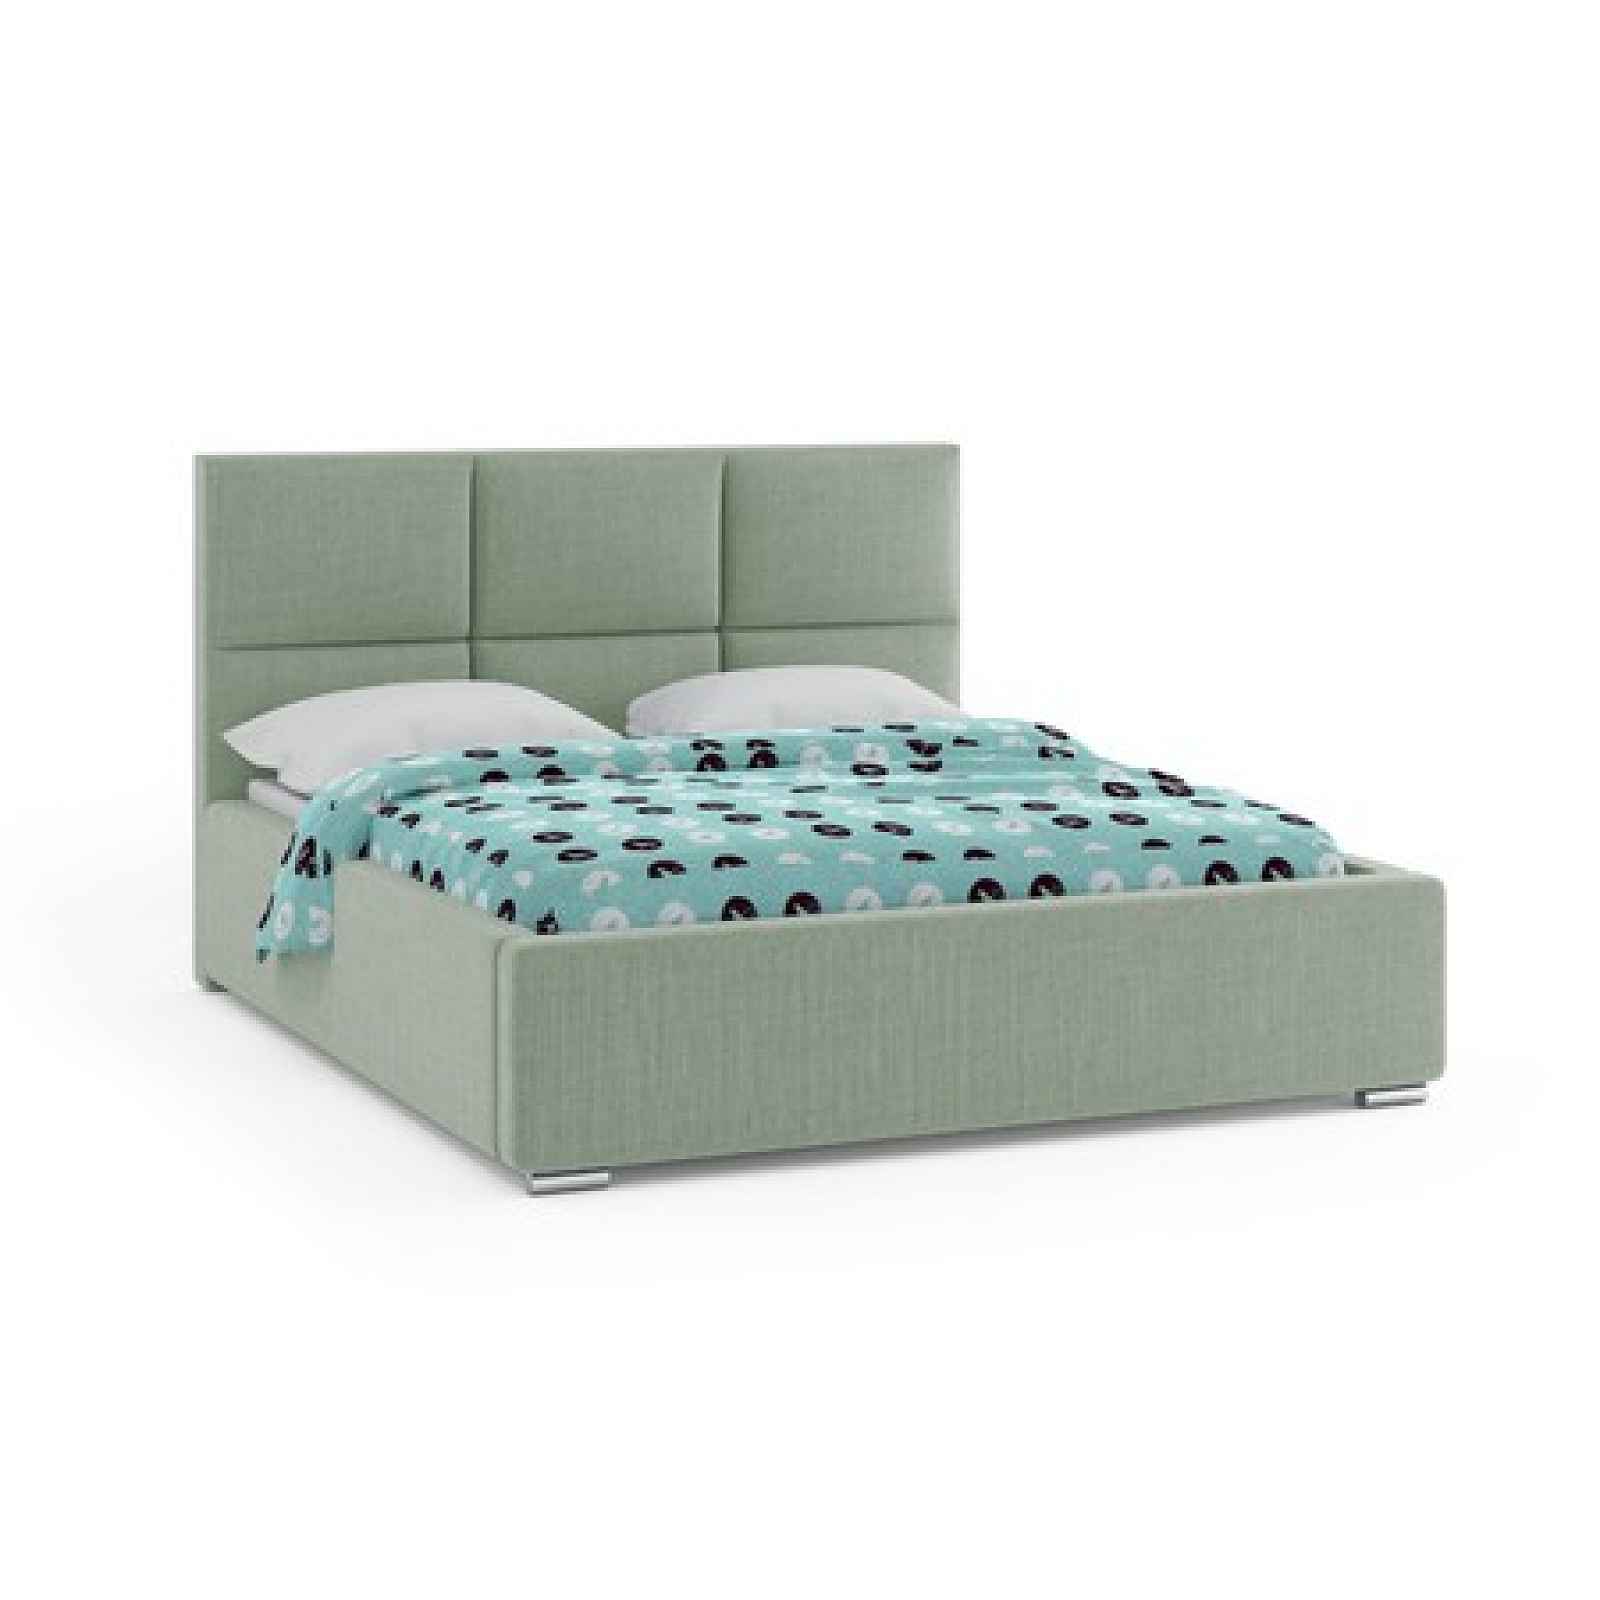 Čalouněná postel NOVATIC 160x200 cm Tmavě zelená